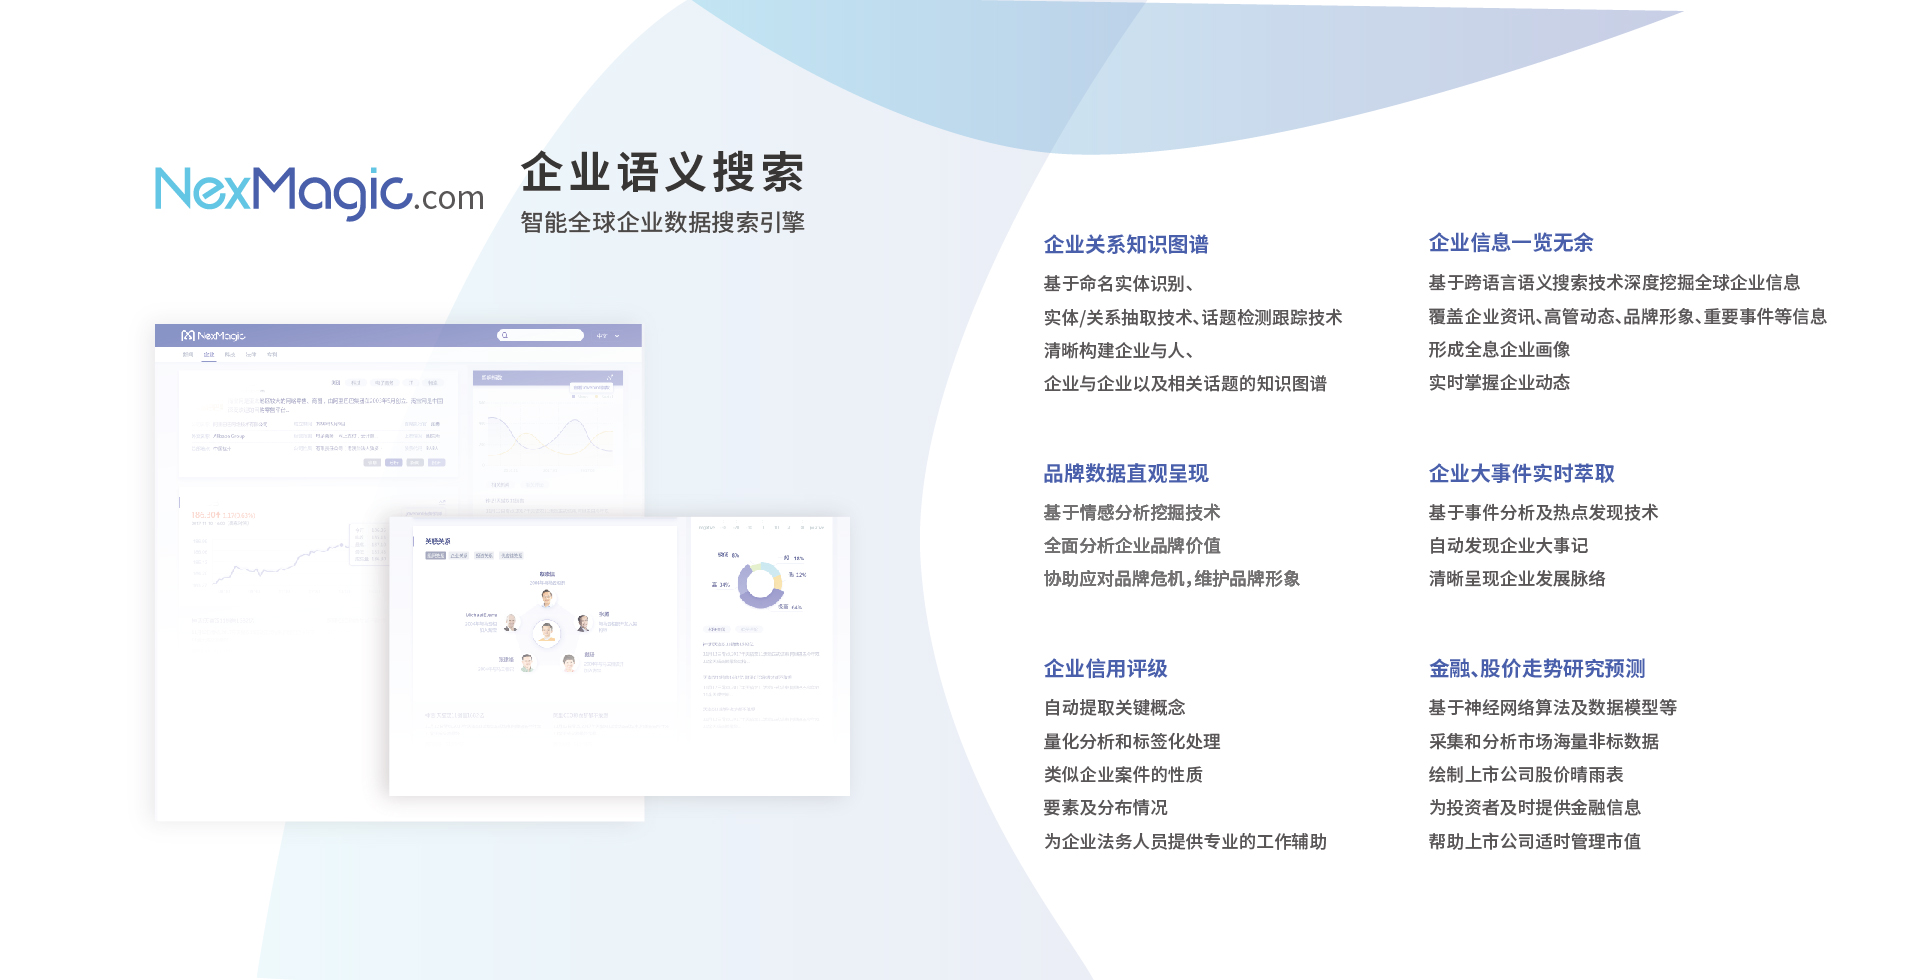 NexMagic 产品手册 中文 2018 V1.0-06.jpg